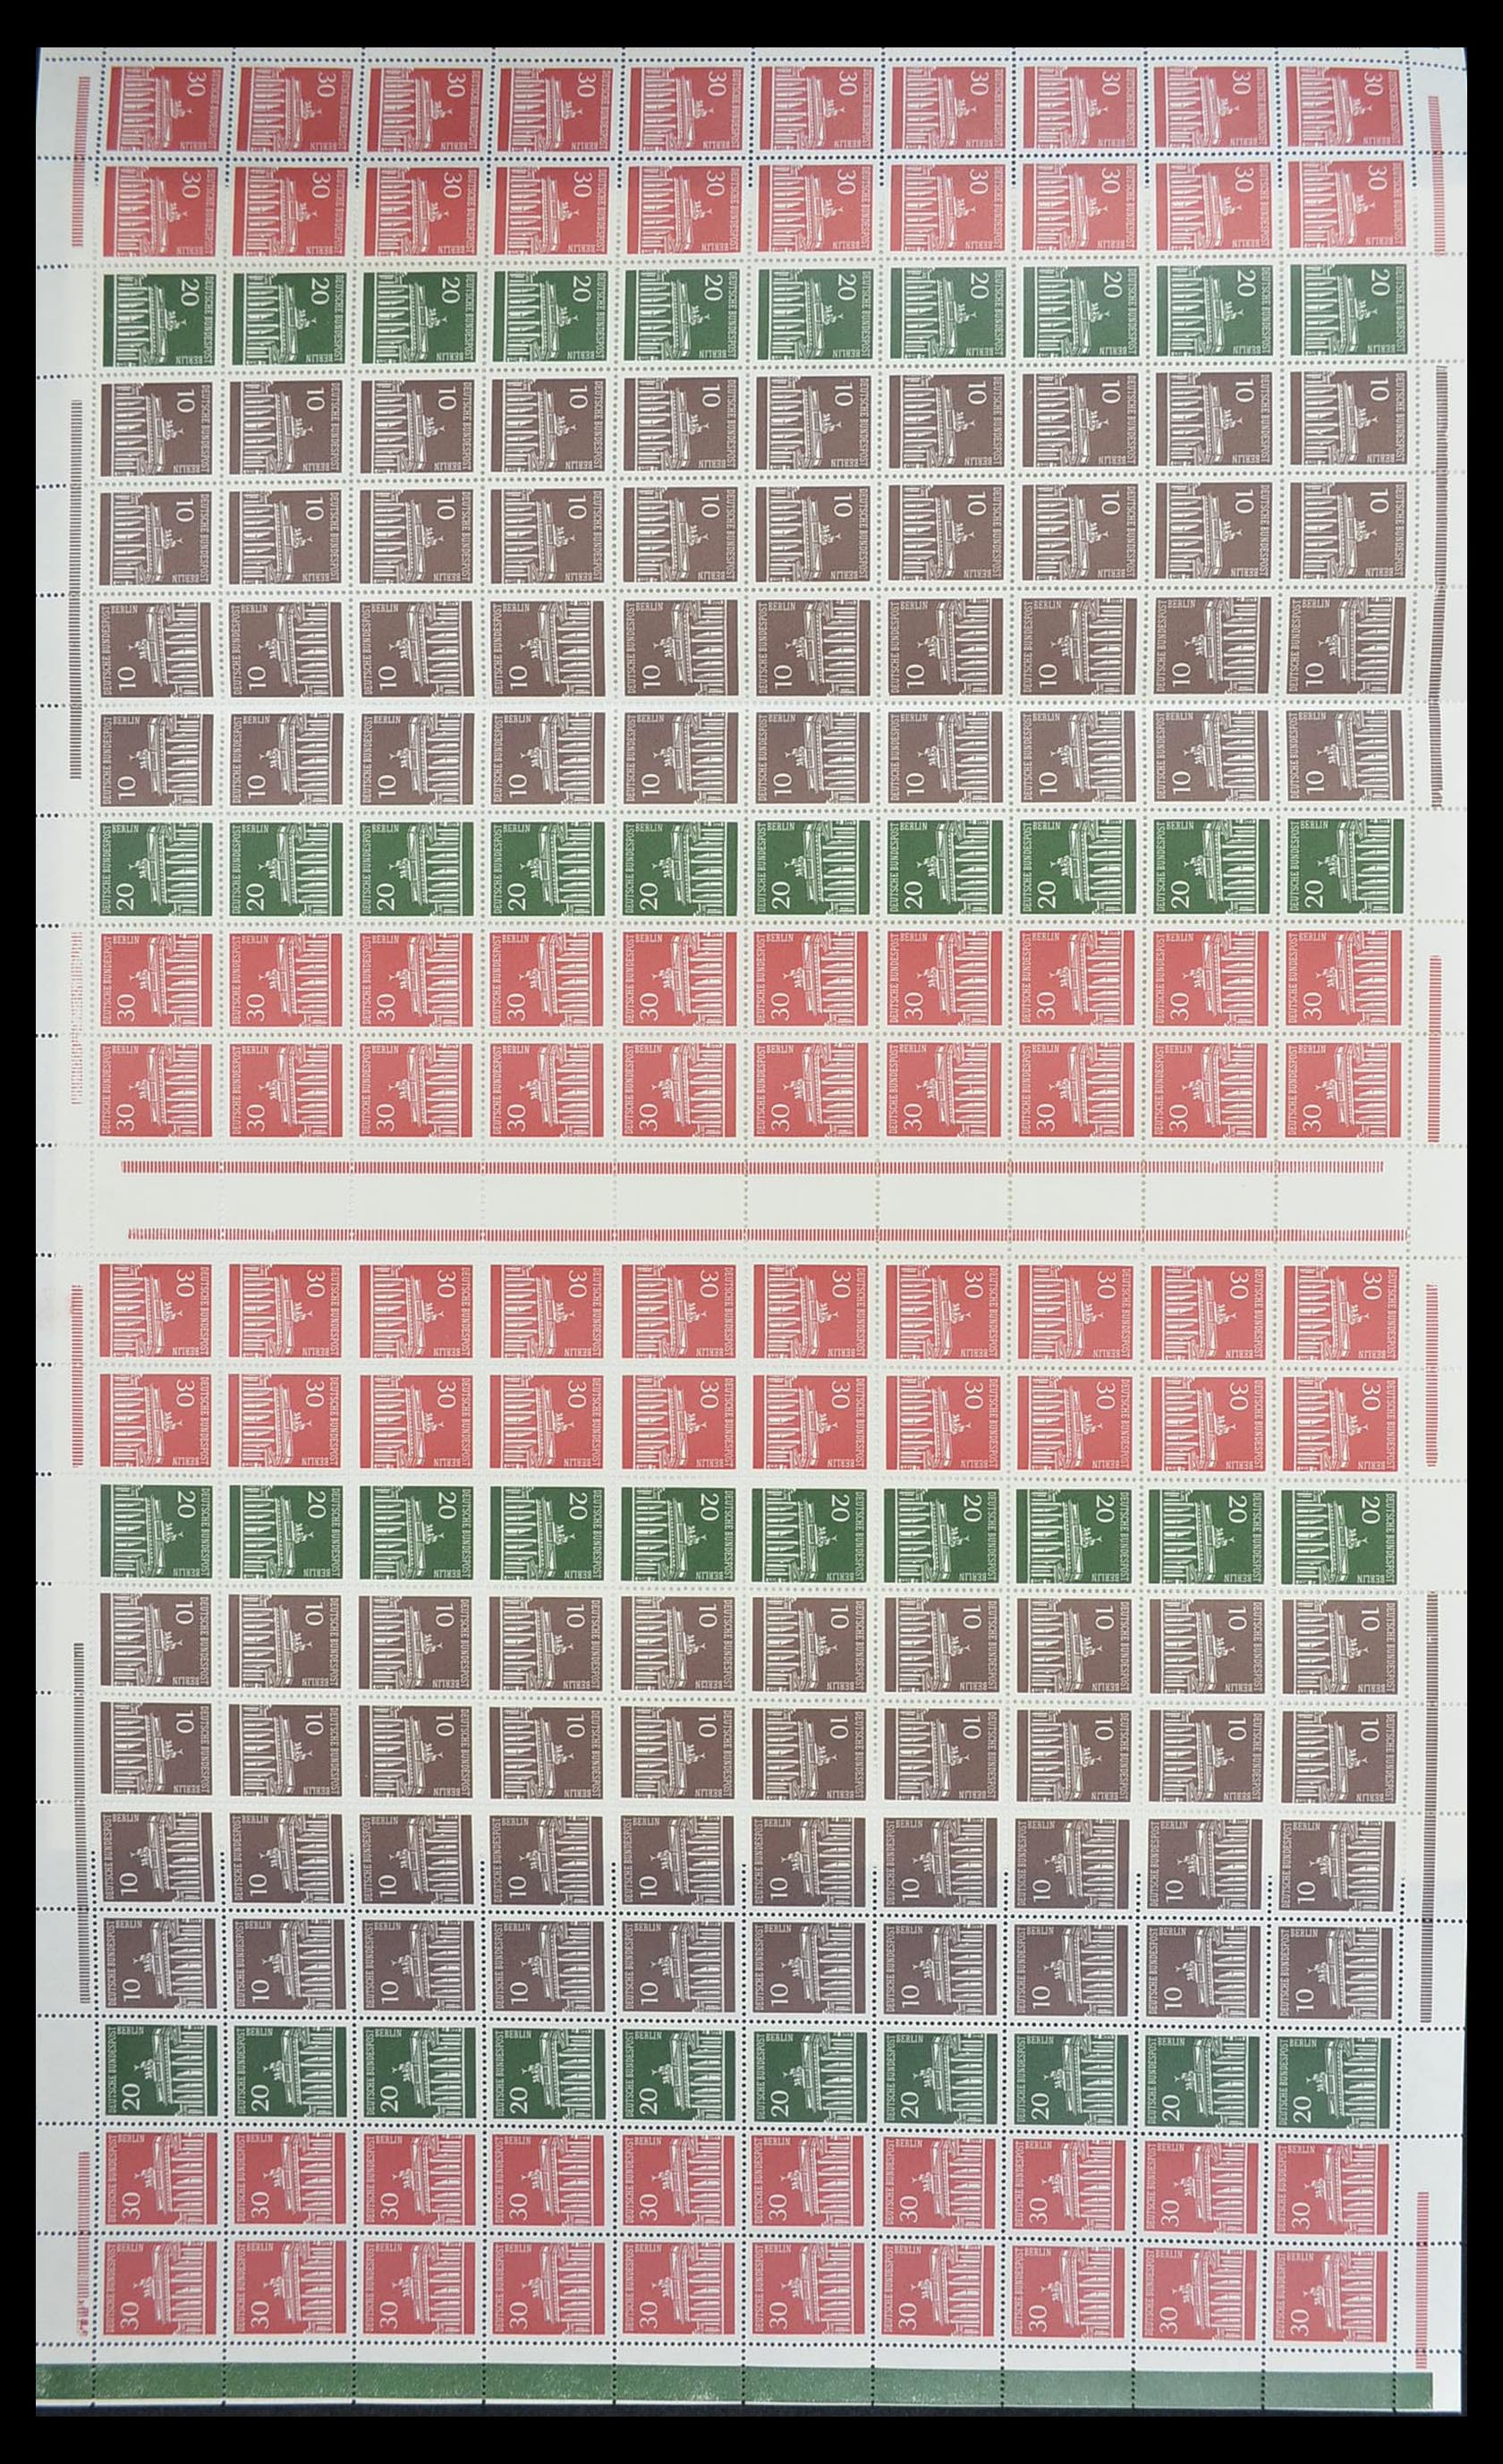 33753 006 - Stamp collection 33753 Bund and Berlin markenheftchenbogen 1966-1973.